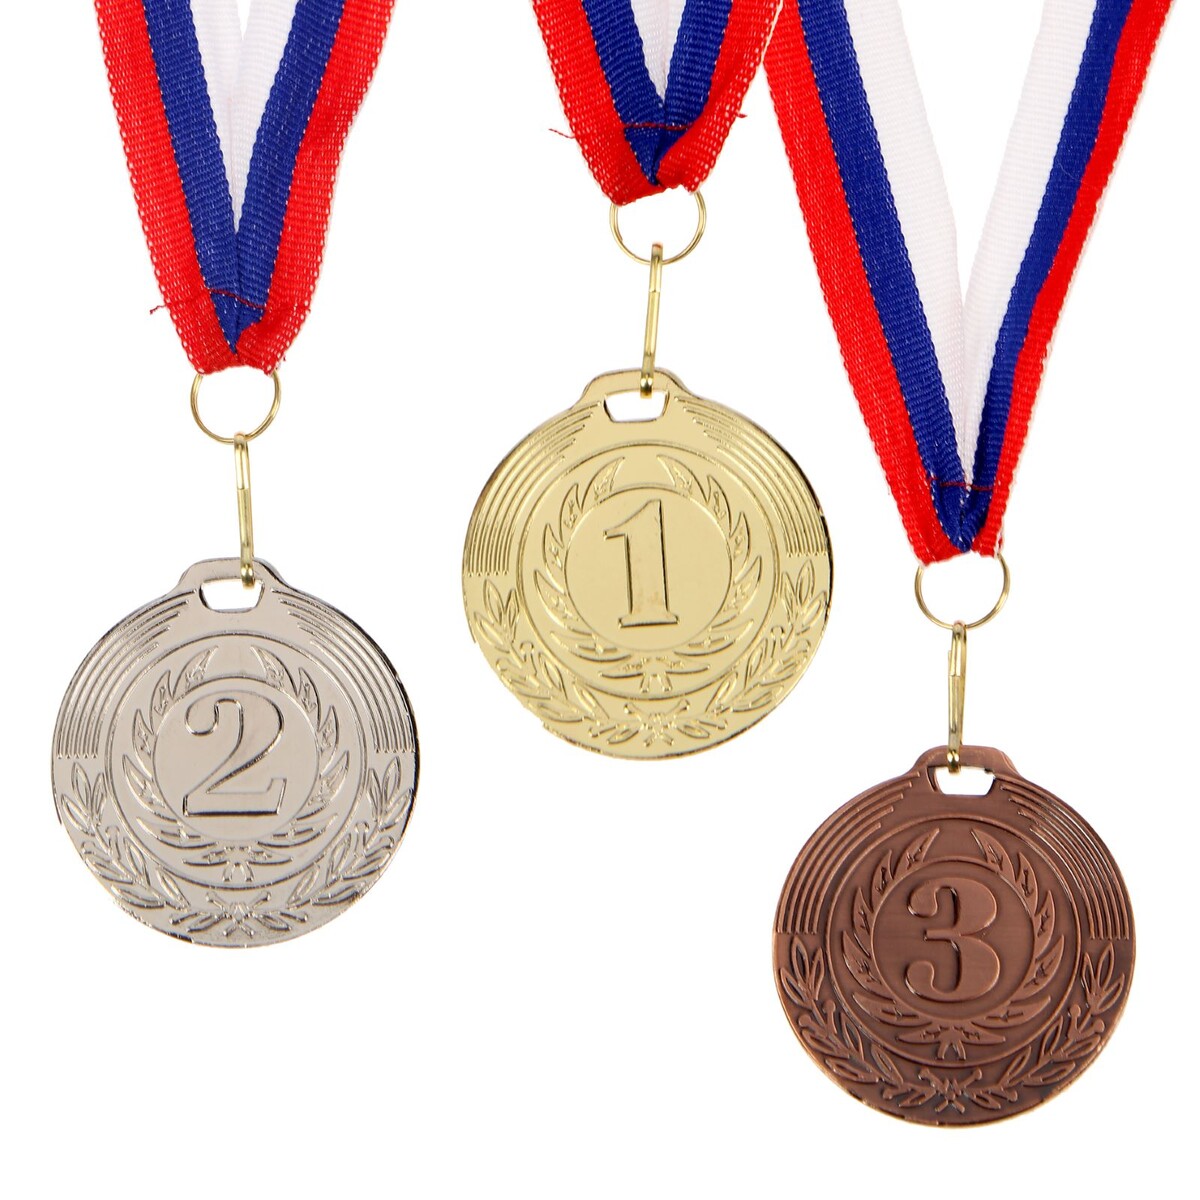 Медаль призовая 049 диам 5 см. 3 место. цвет бронз. с лентой медаль призовая 021 диам 4 см 3 место бронз без ленты